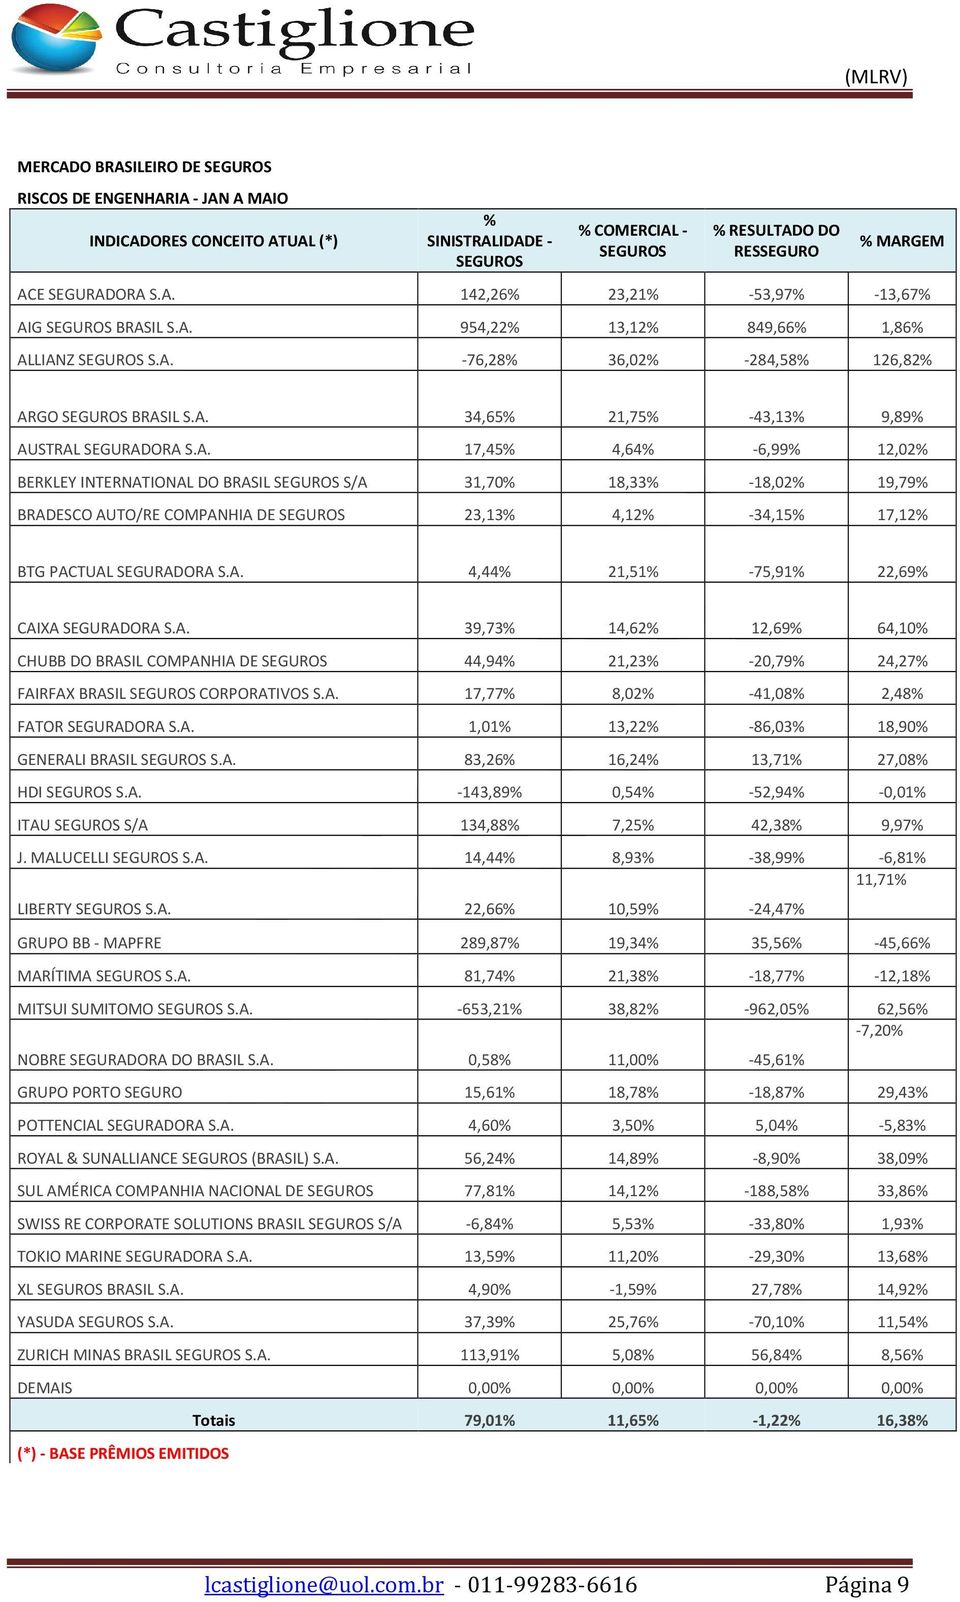 A. 4,44% 21,51% -75,91% 22,69% CAIXA SEGURADORA S.A. 39,73% 14,62% 12,69% 64,10% CHUBB DO BRASIL COMPANHIA DE SEGUROS 44,94% 21,23% -20,79% 24,27% FAIRFAX BRASIL SEGUROS CORPORATIVOS S.A. 17,77% 8,02% -41,08% 2,48% FATOR SEGURADORA S.